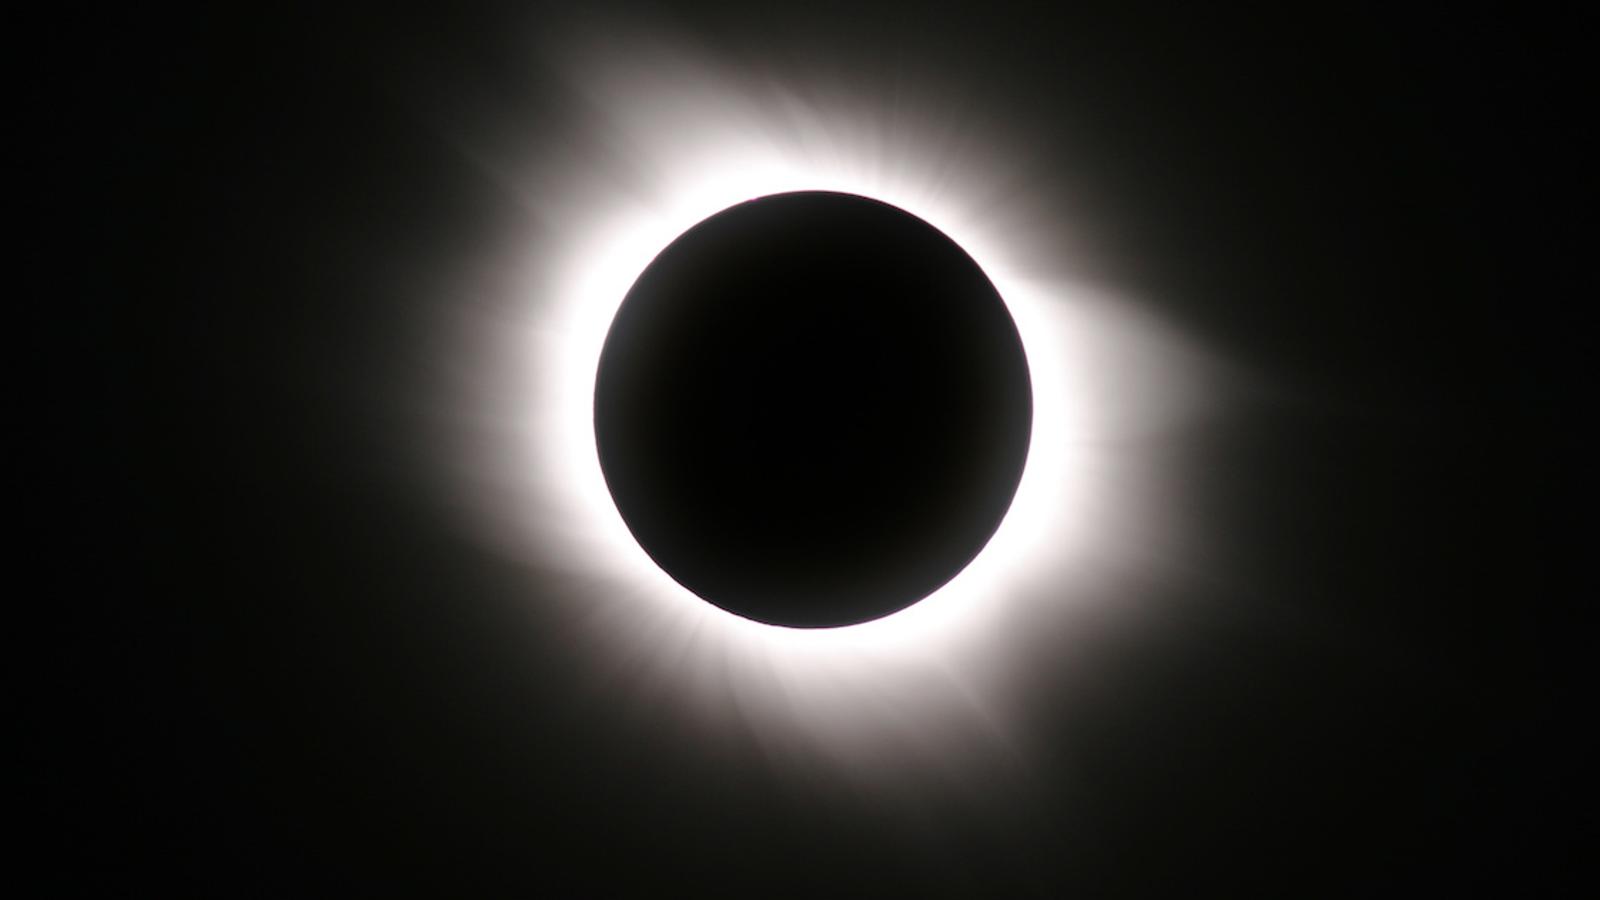 Des écoles pourraient être fermées pour l’éclipse du 8 avril prochain 